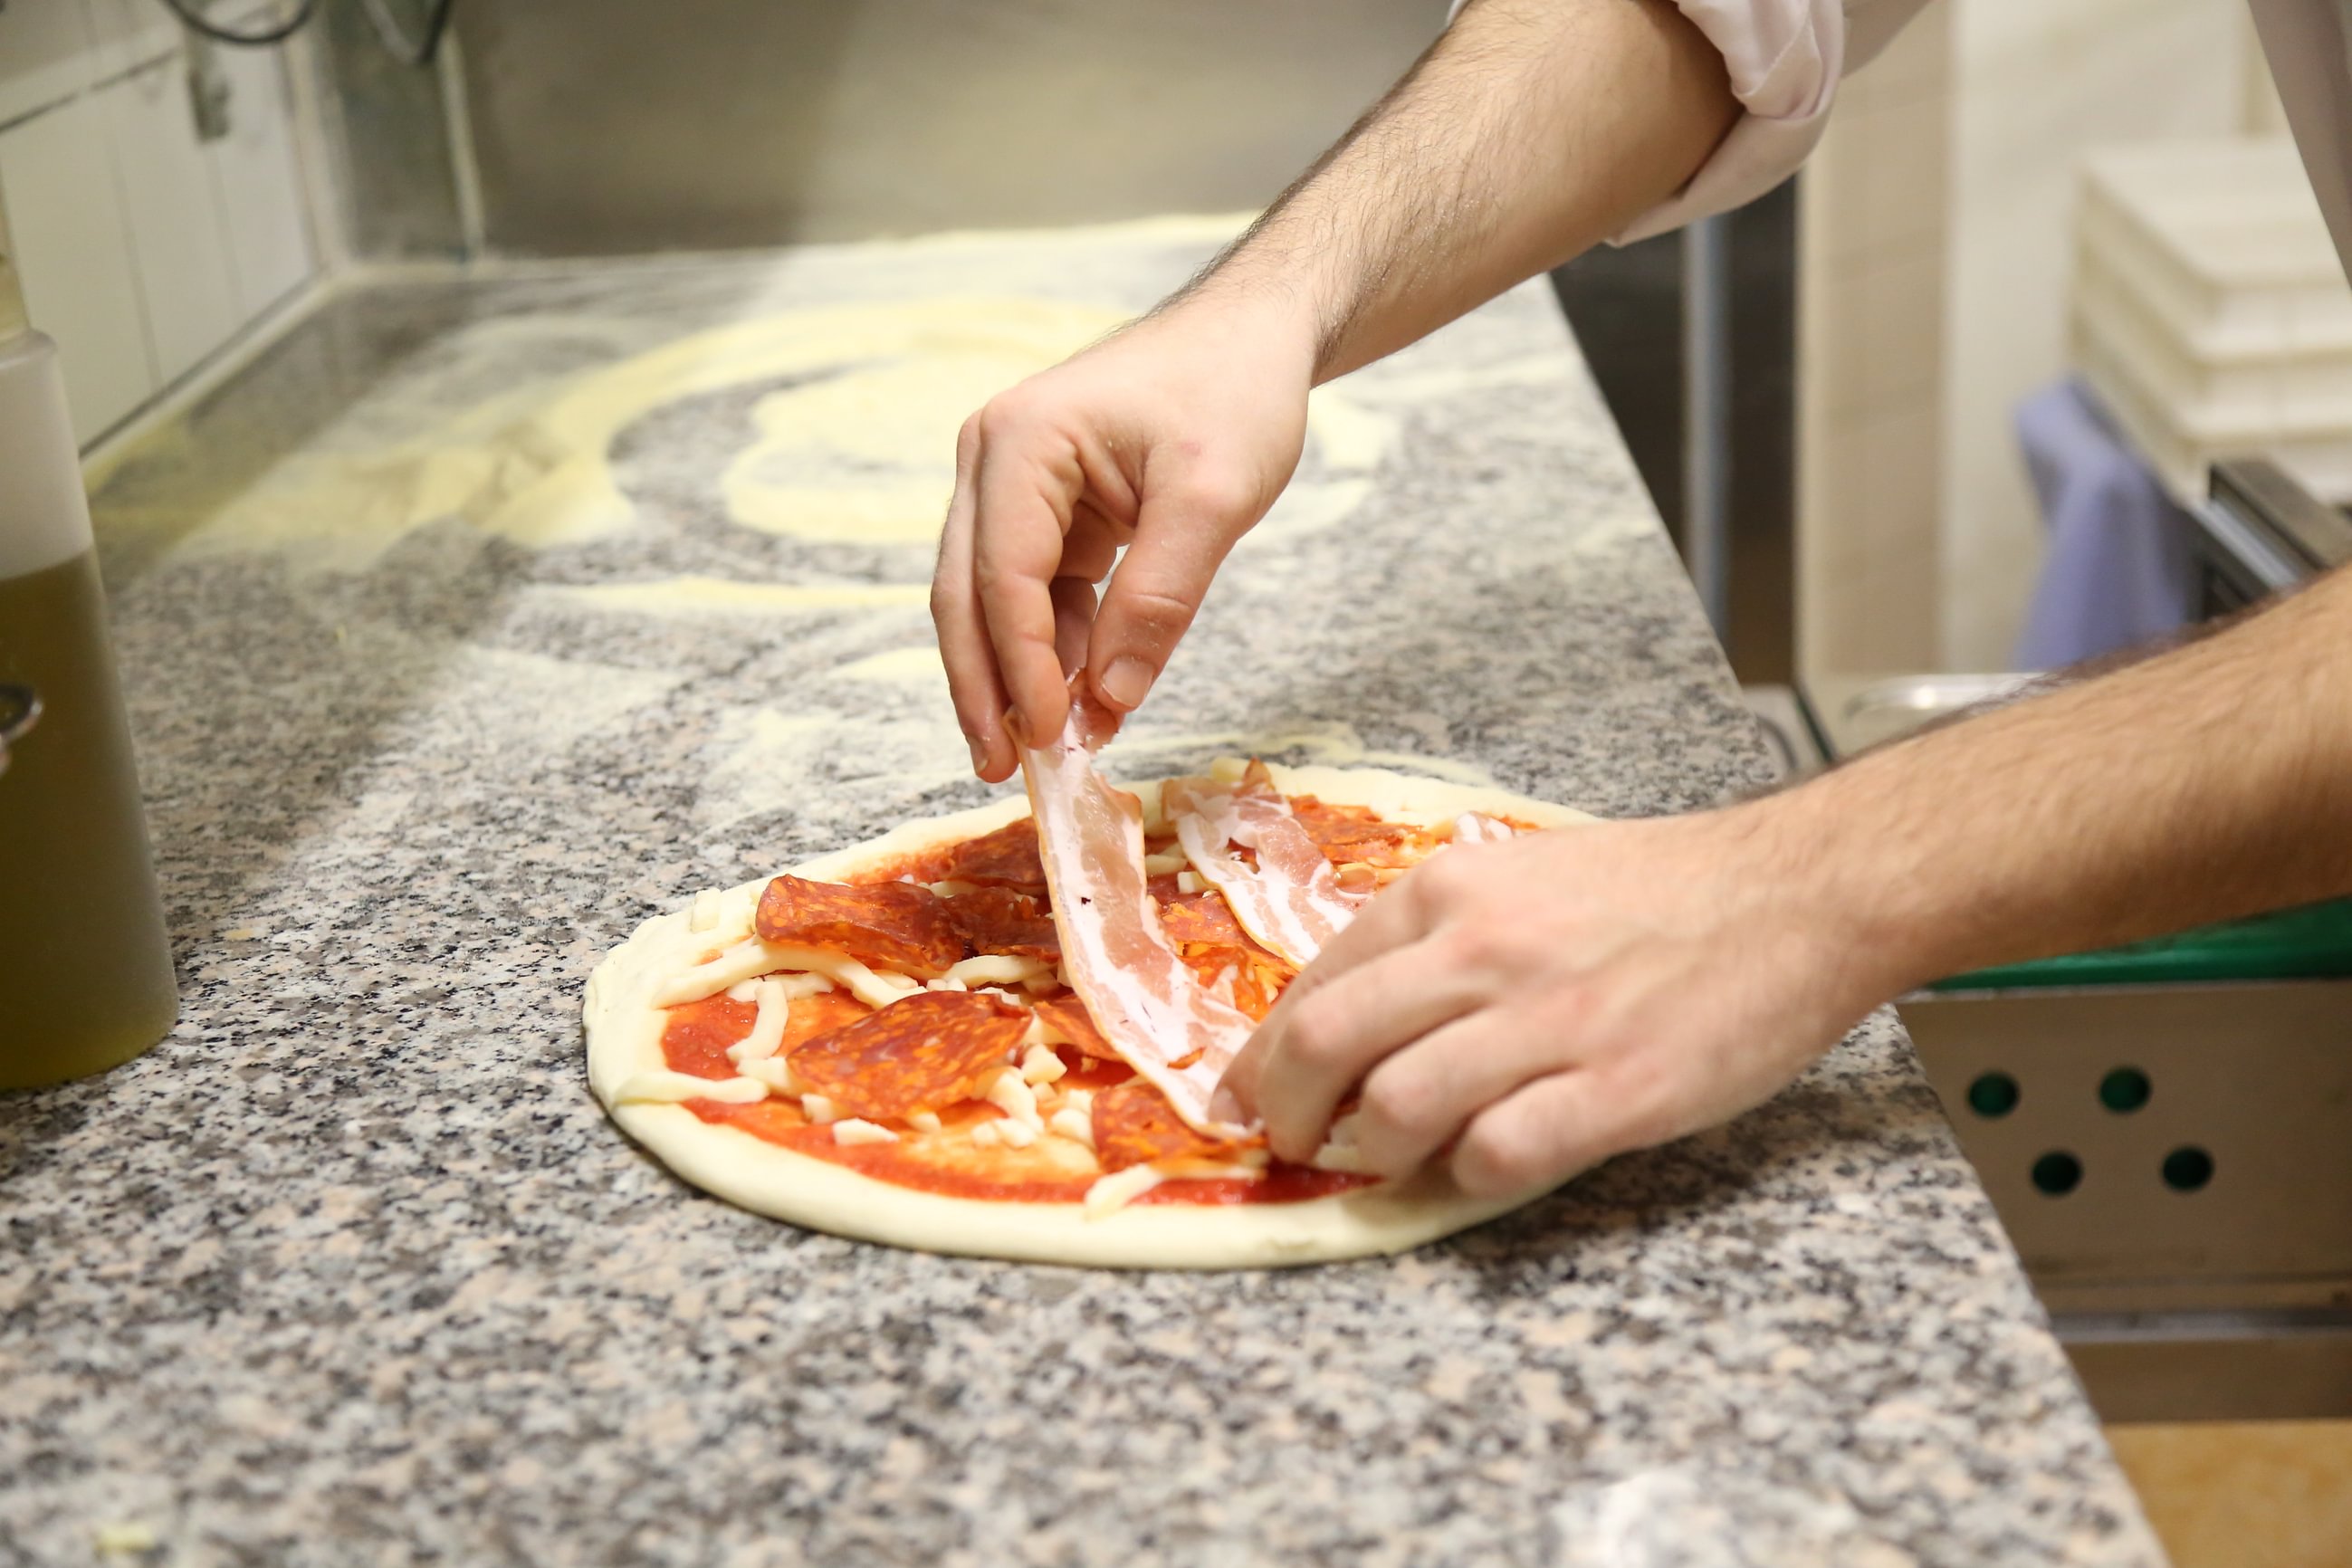 SAPORI - Ristorante Pizzeria